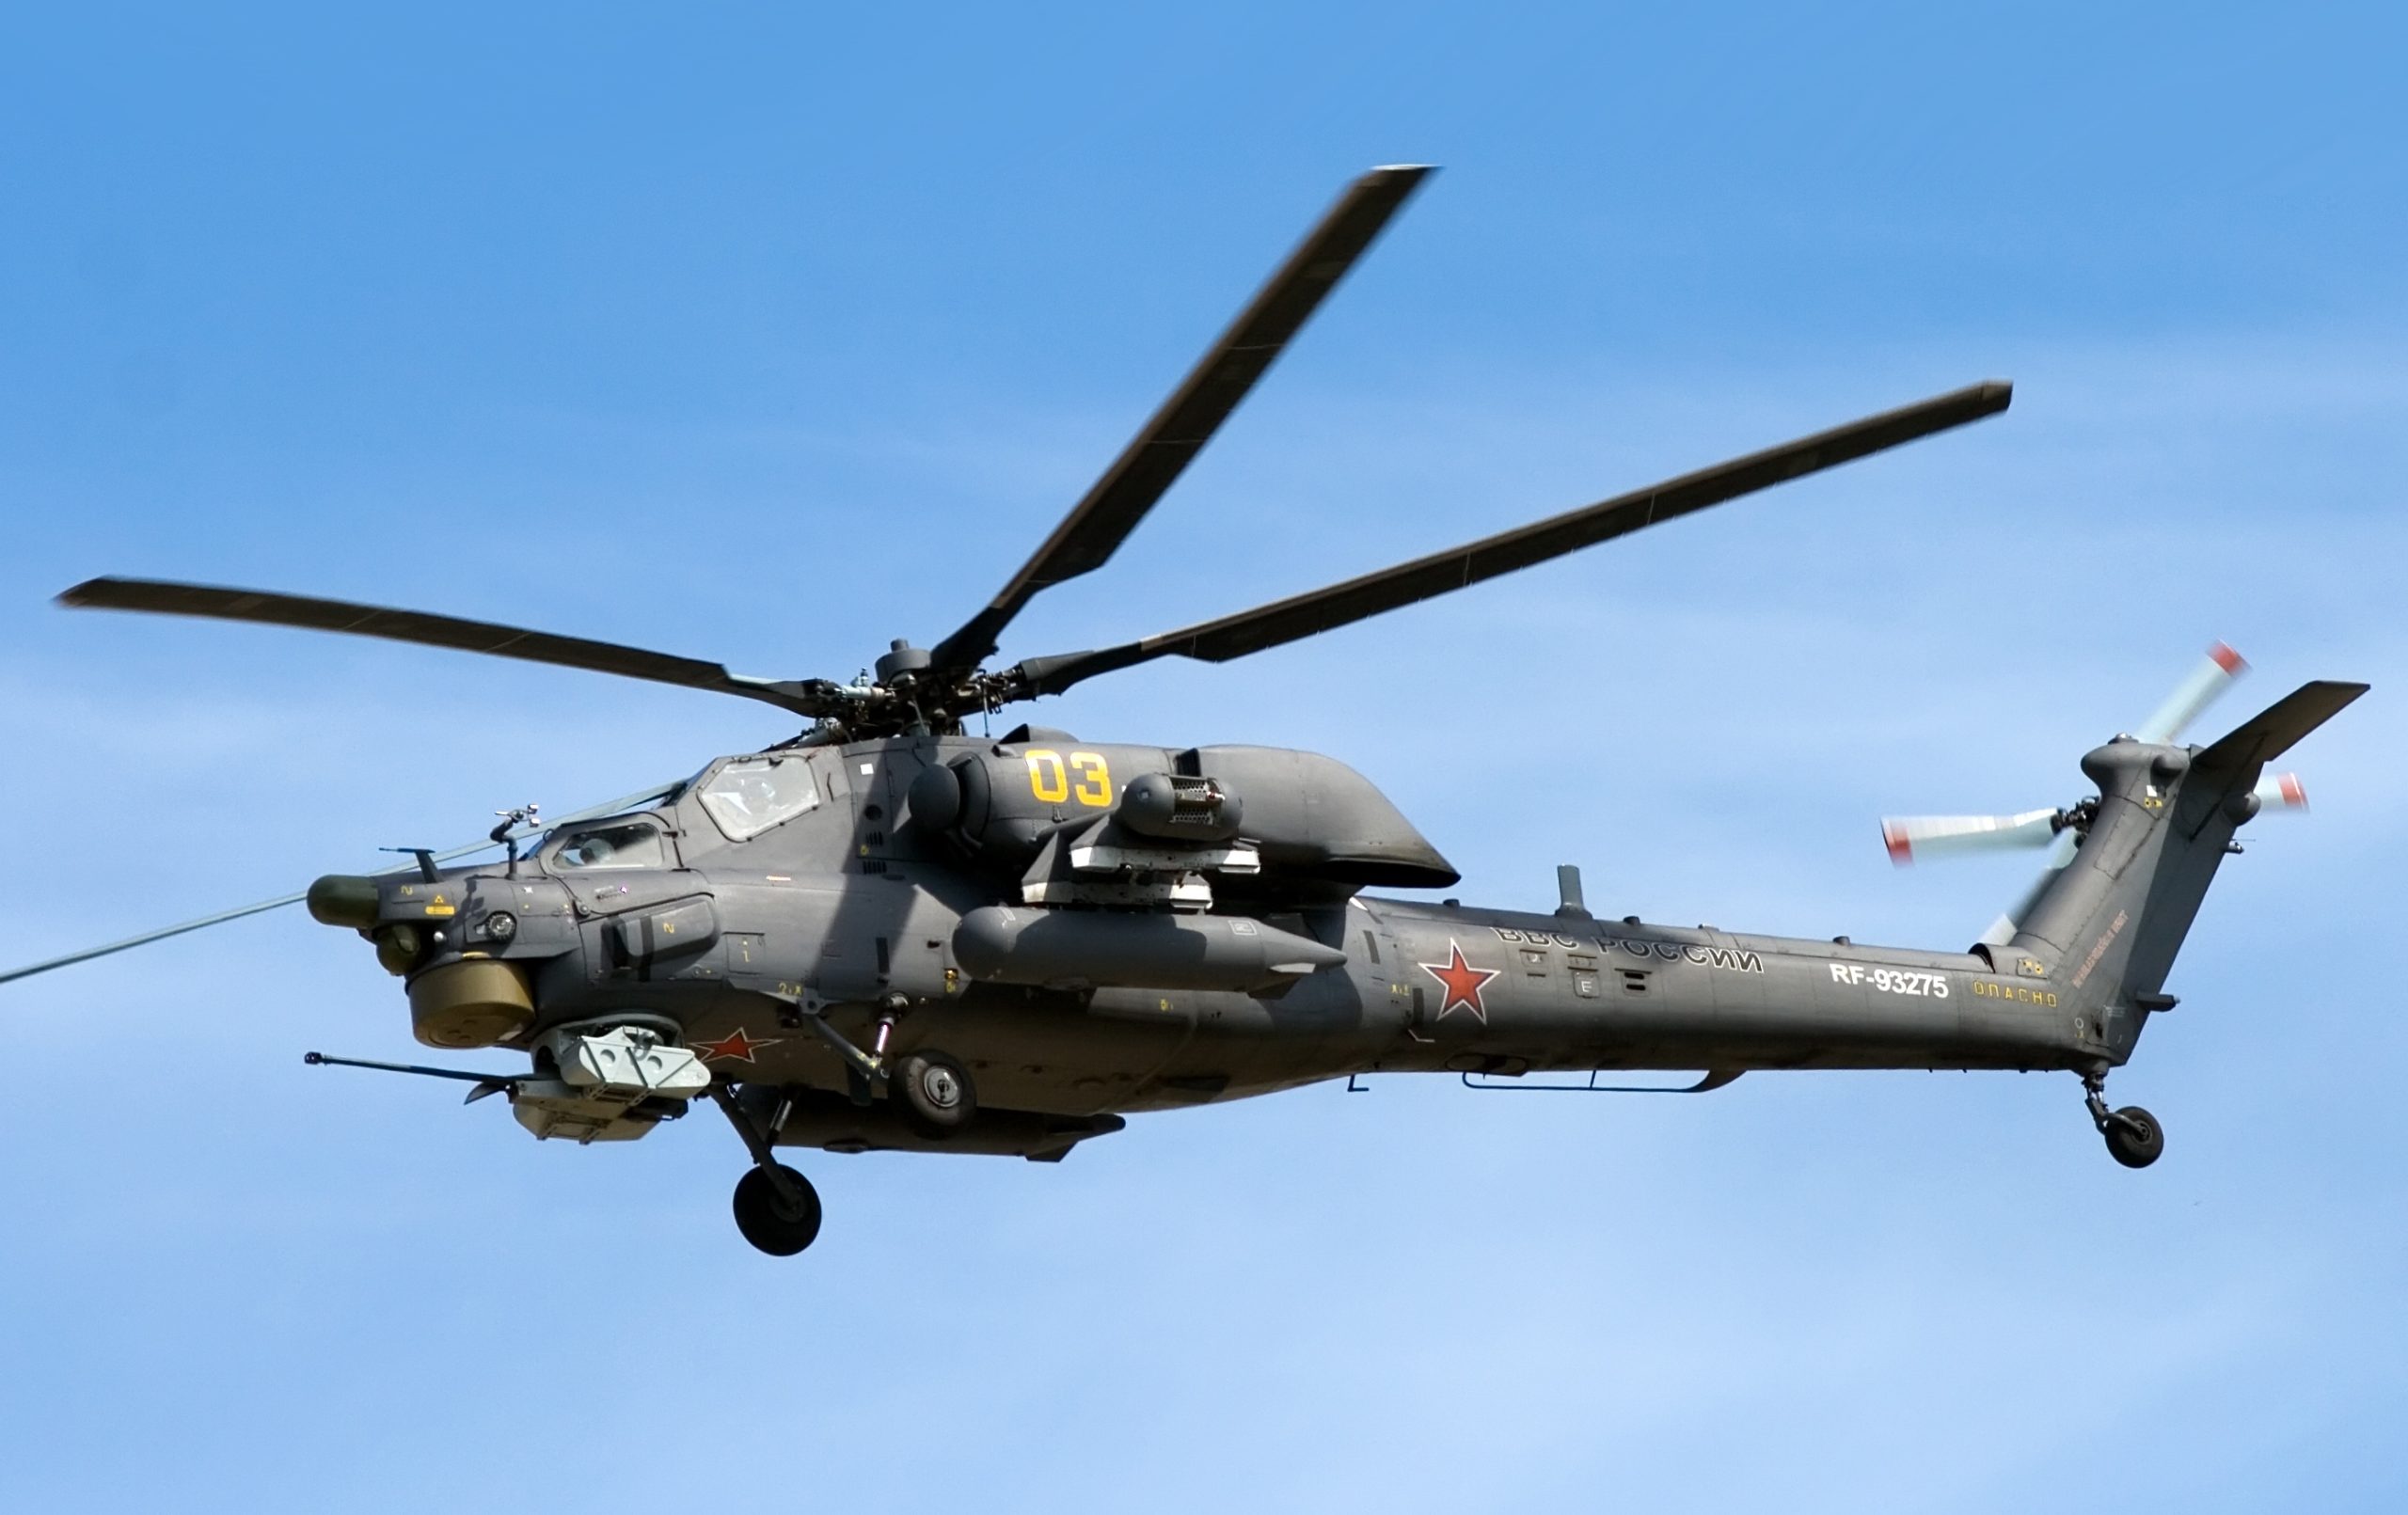 Βίντεο: Mi-28 και Mi-24 σε αποστολές μάχης στην Ουκρανία